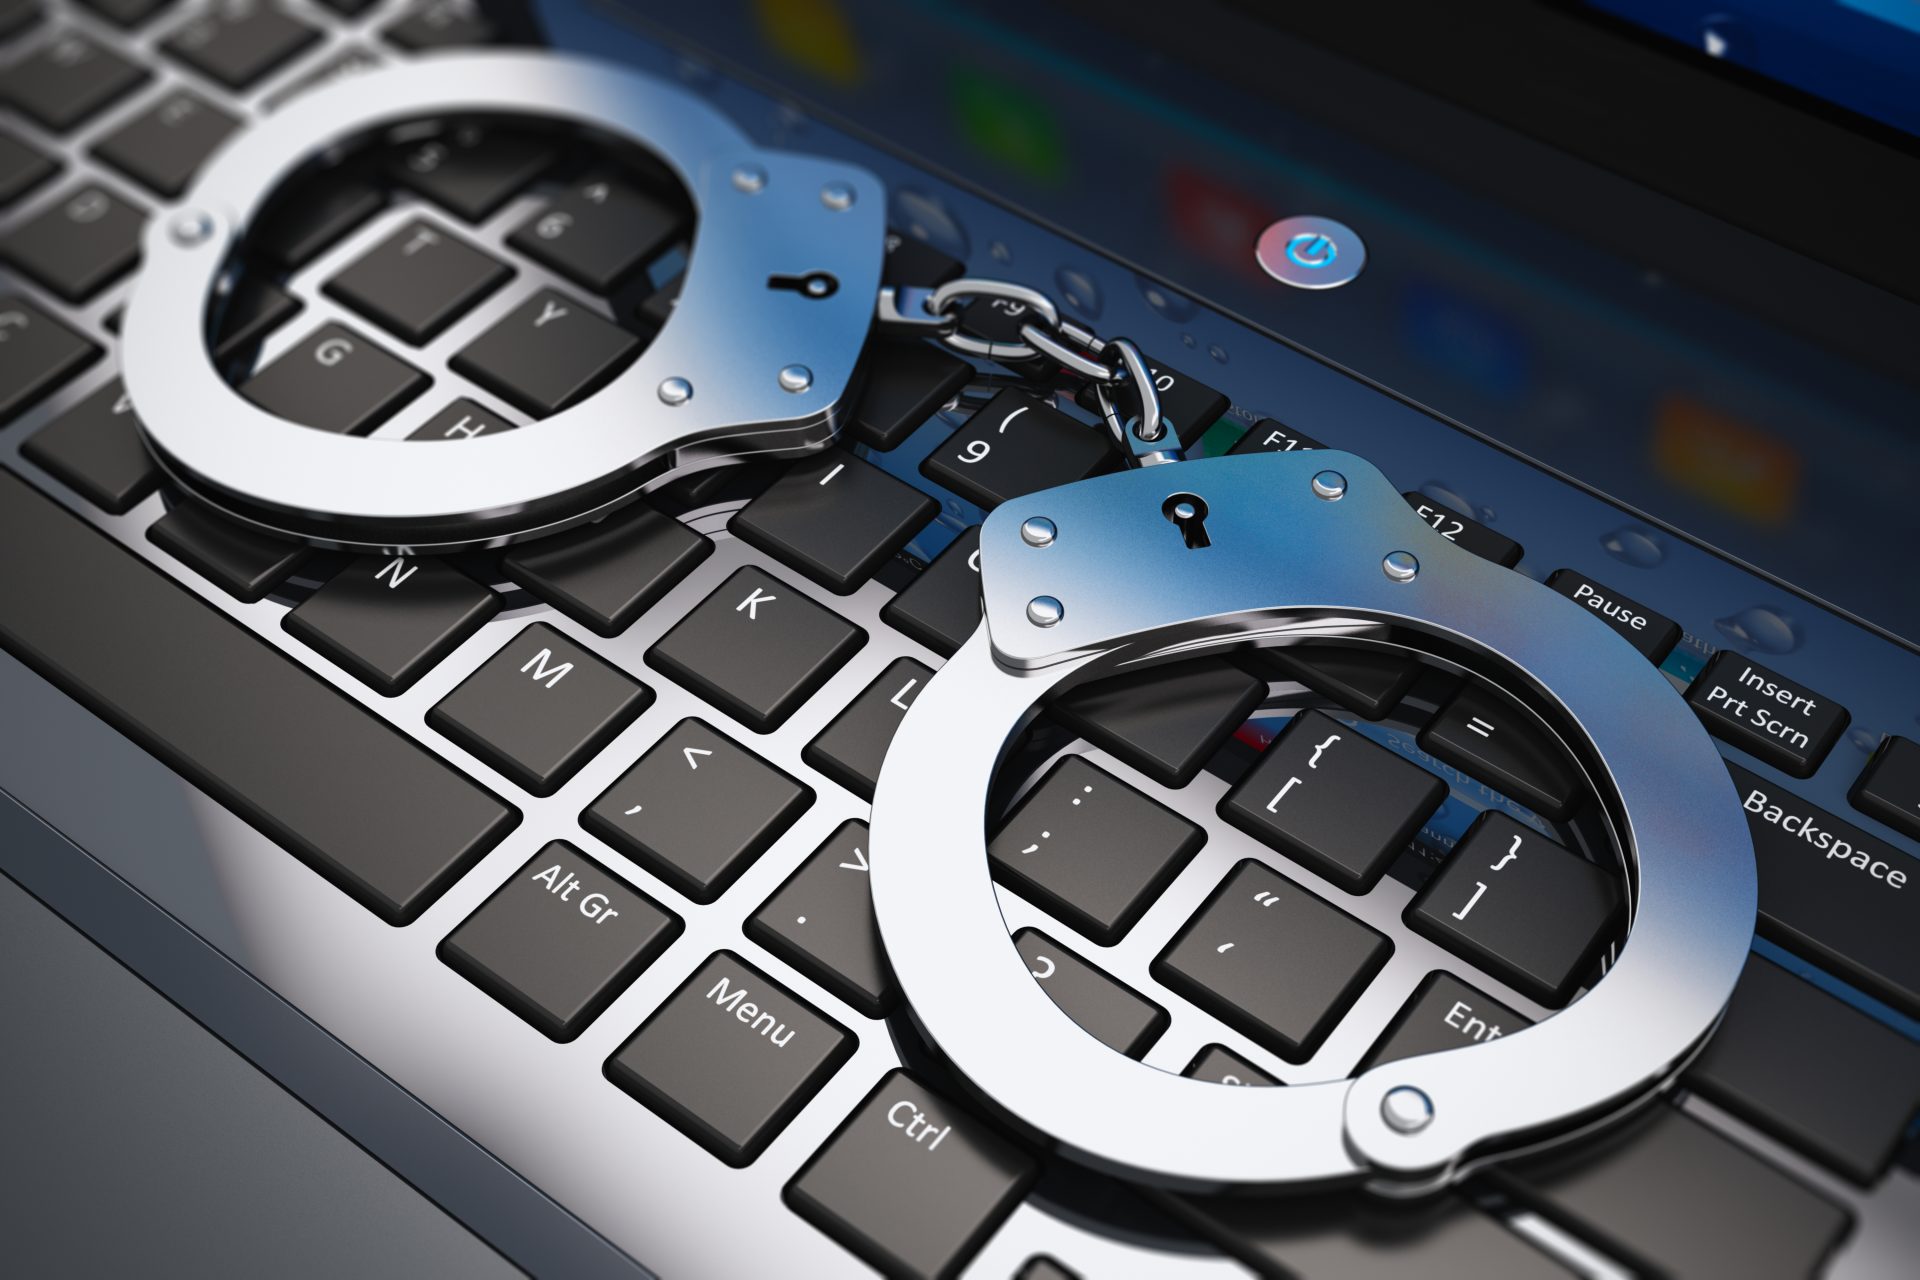 Accordo fra Acque Veronesi e Polizia contro i crimini informatici